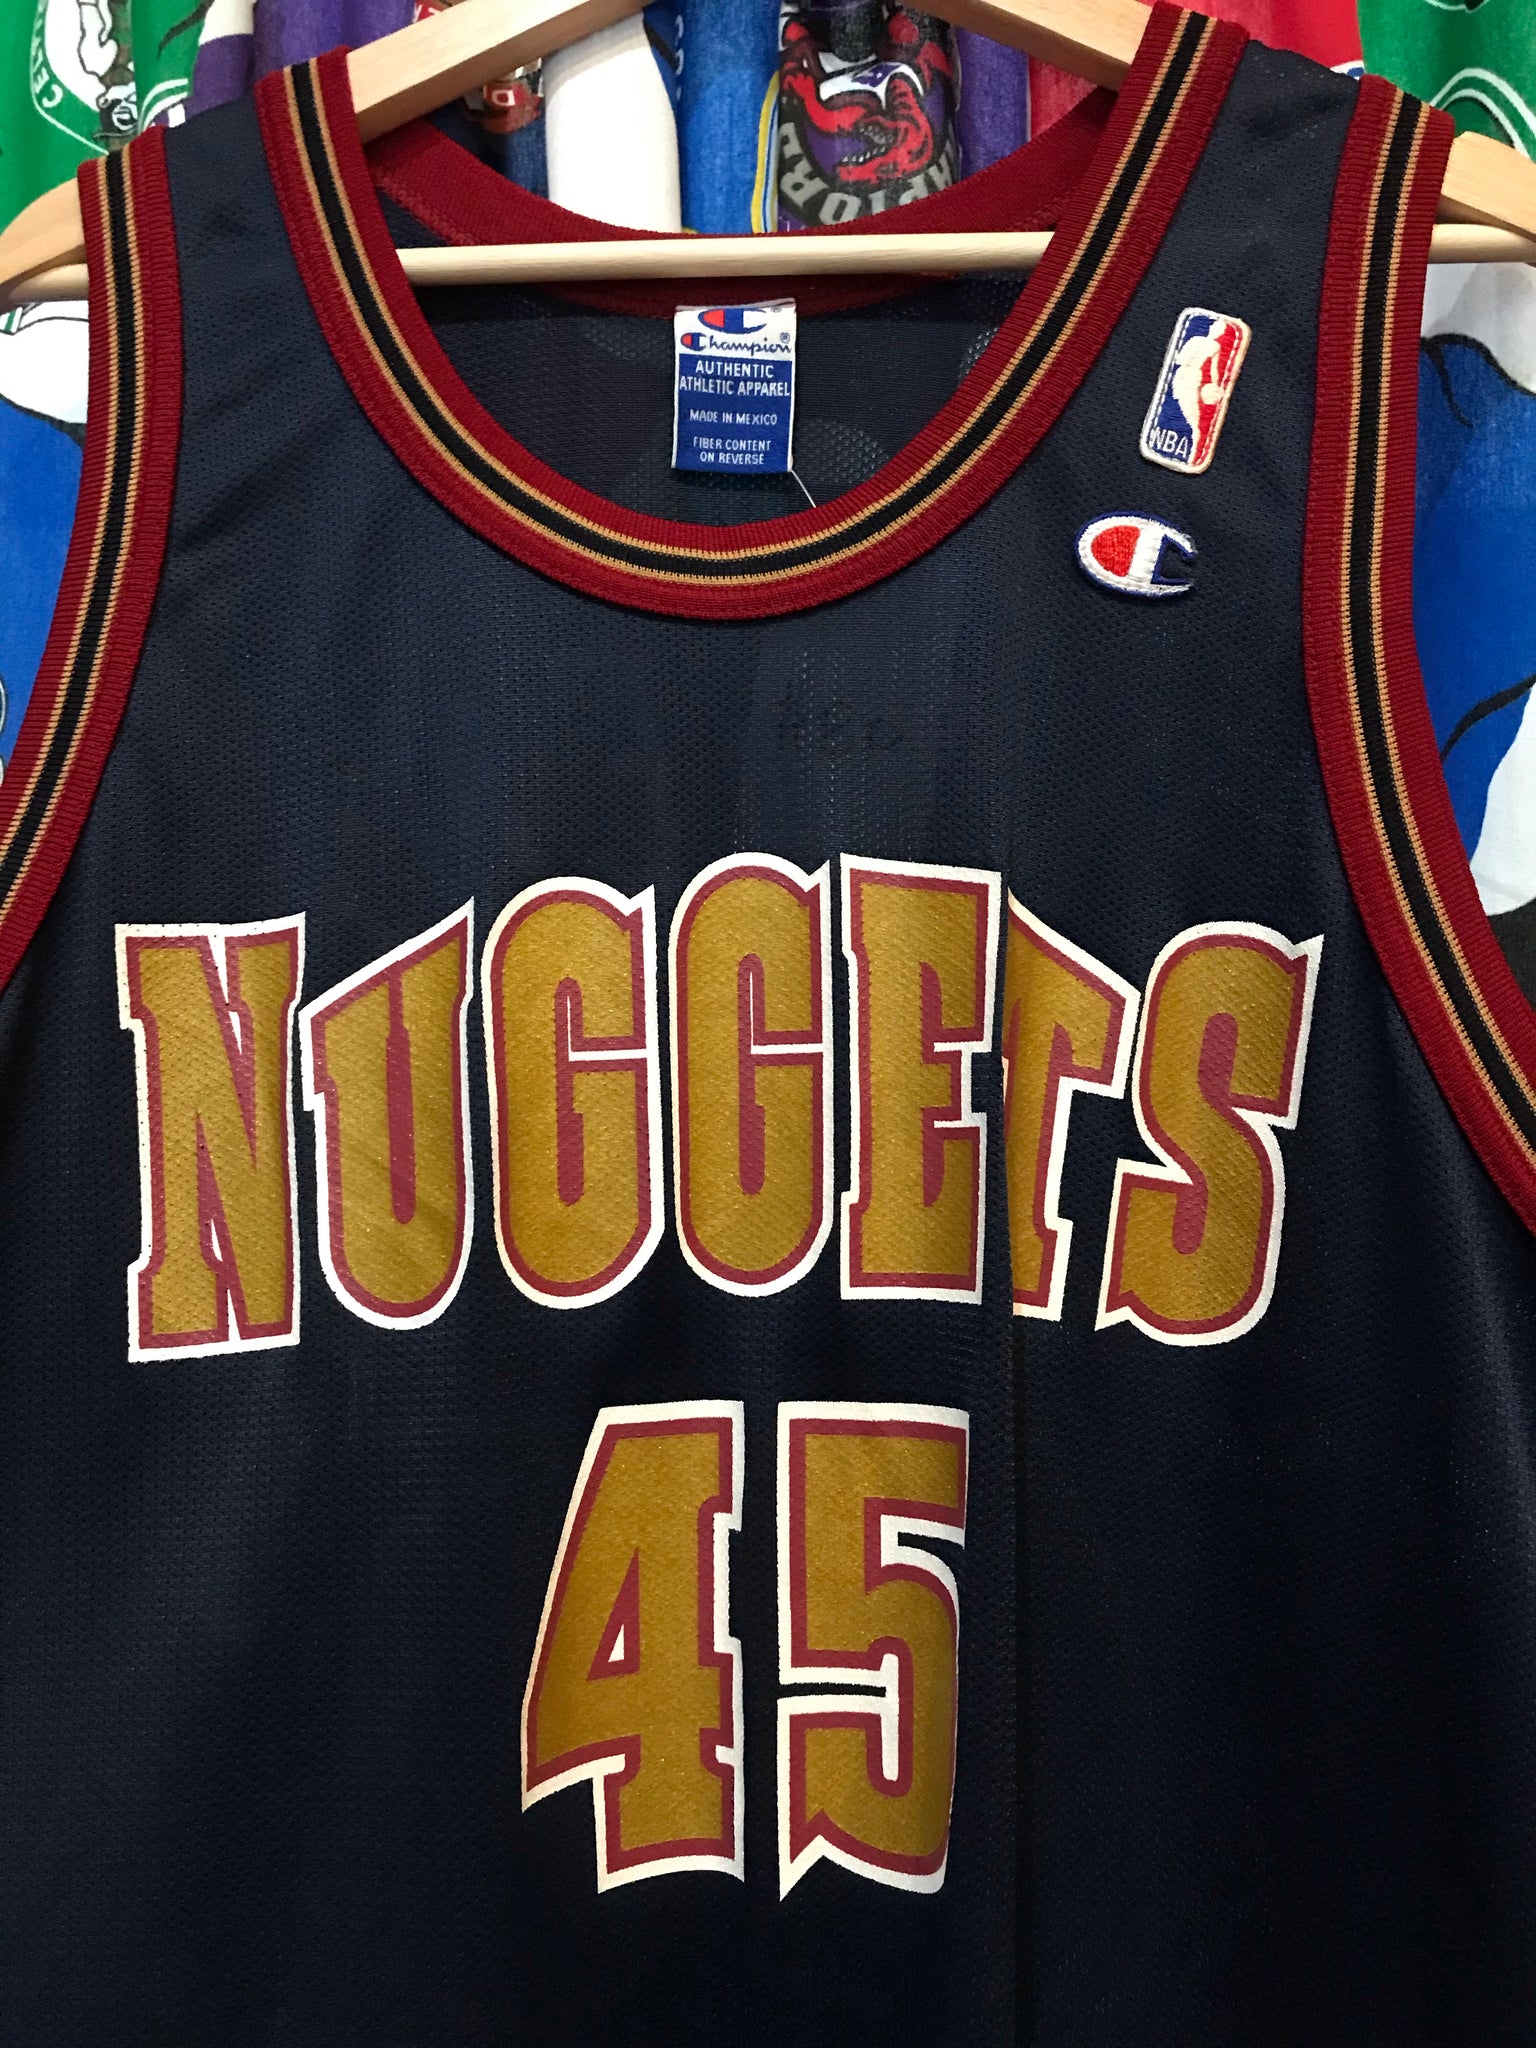 Denver Nuggets Vintage Apparel & Jerseys